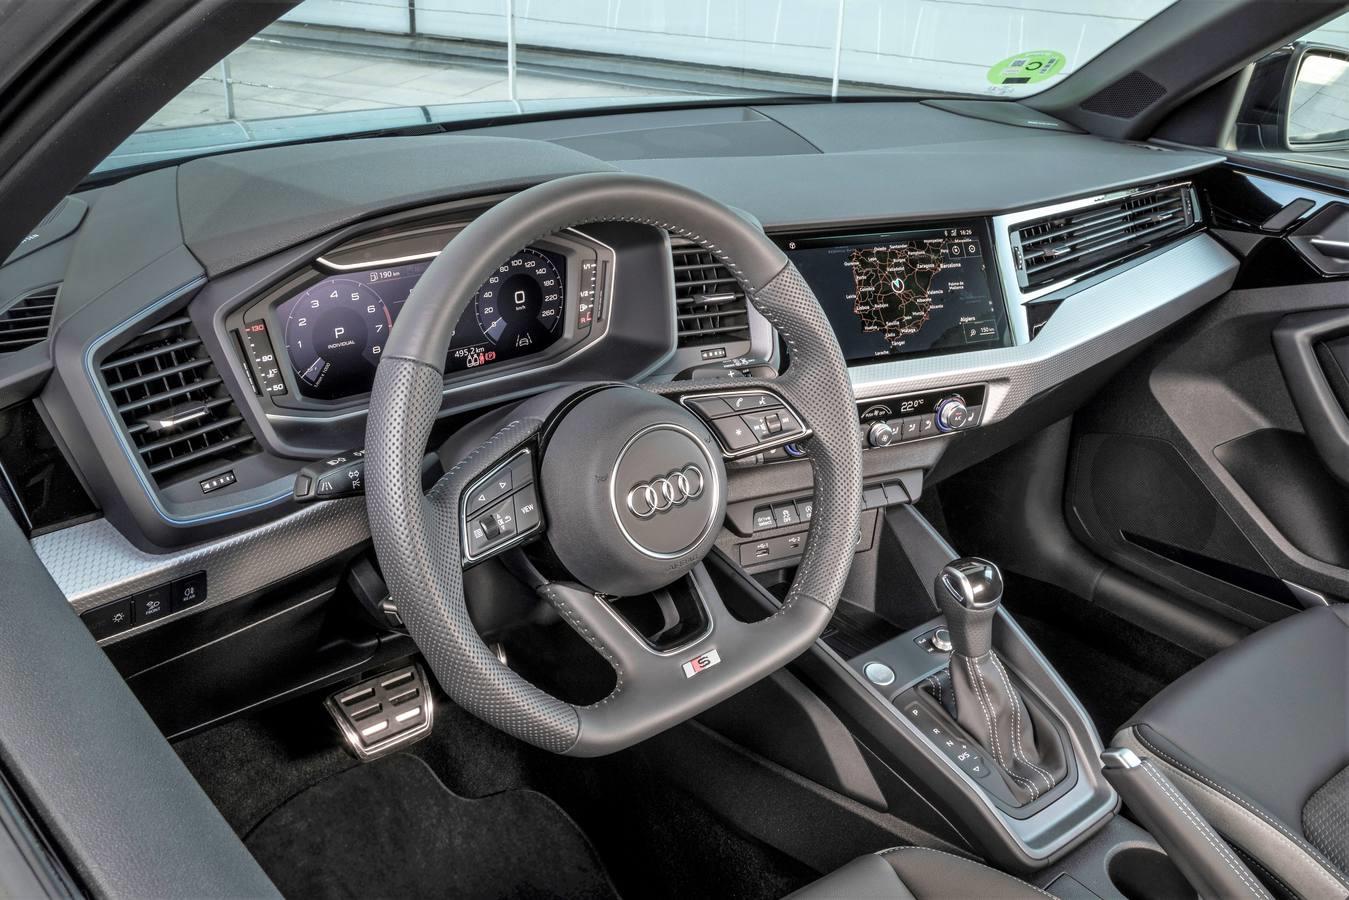 Es la segunda generación del coche más ciudadano de Audi, el A1 Sportback. Un coche de cuatro metros, con la calidad y tecnología habitual de la marca y solo con motores de gasolina.